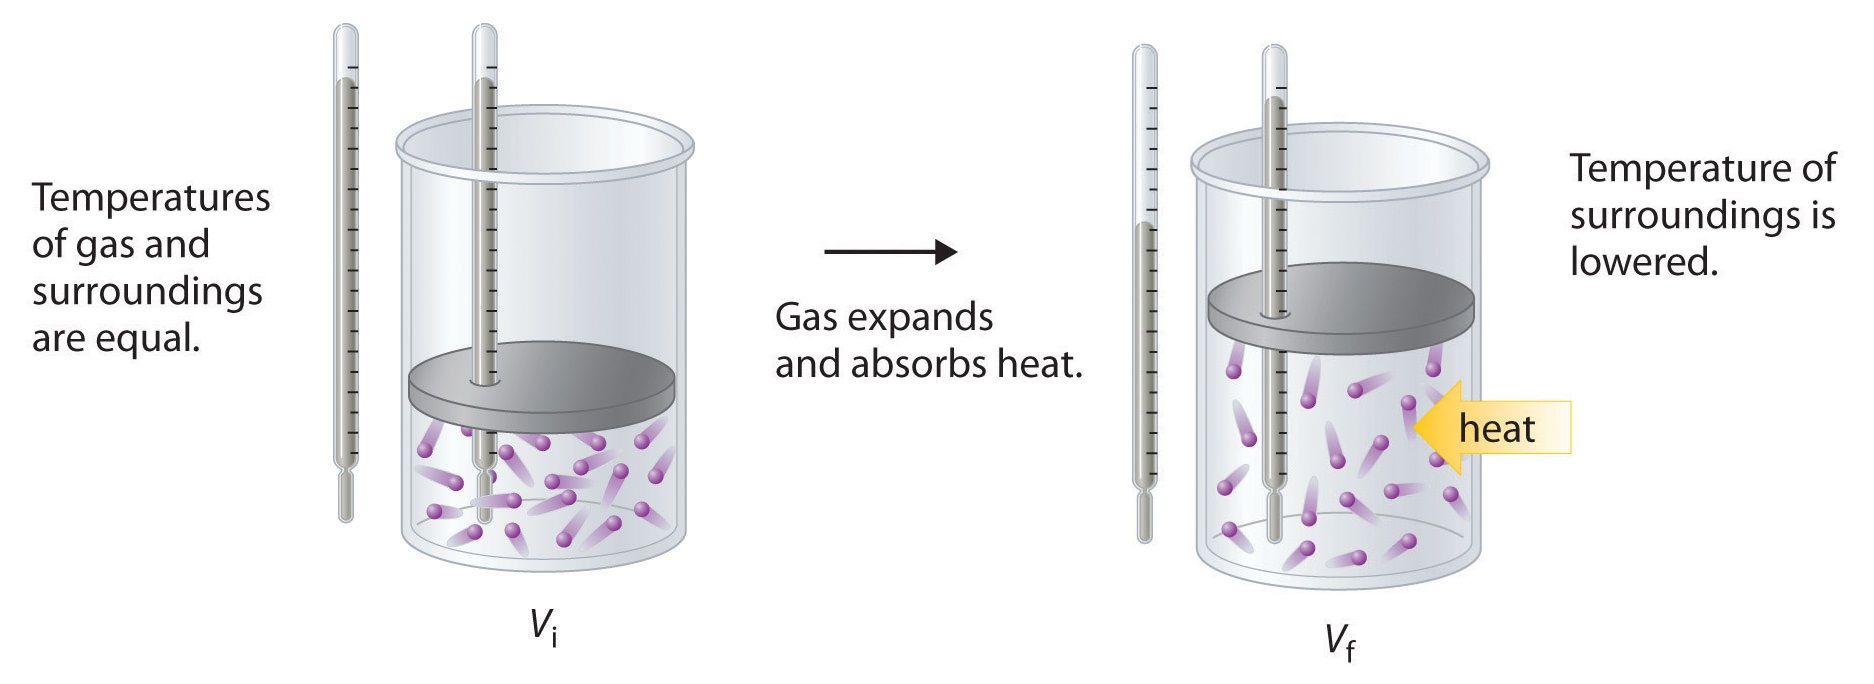 Las temperaturas del gas y los alrededores son iguales. Entonces el gas se expande y absorbe calor. Luego se baja la temperatura de los alrededores.